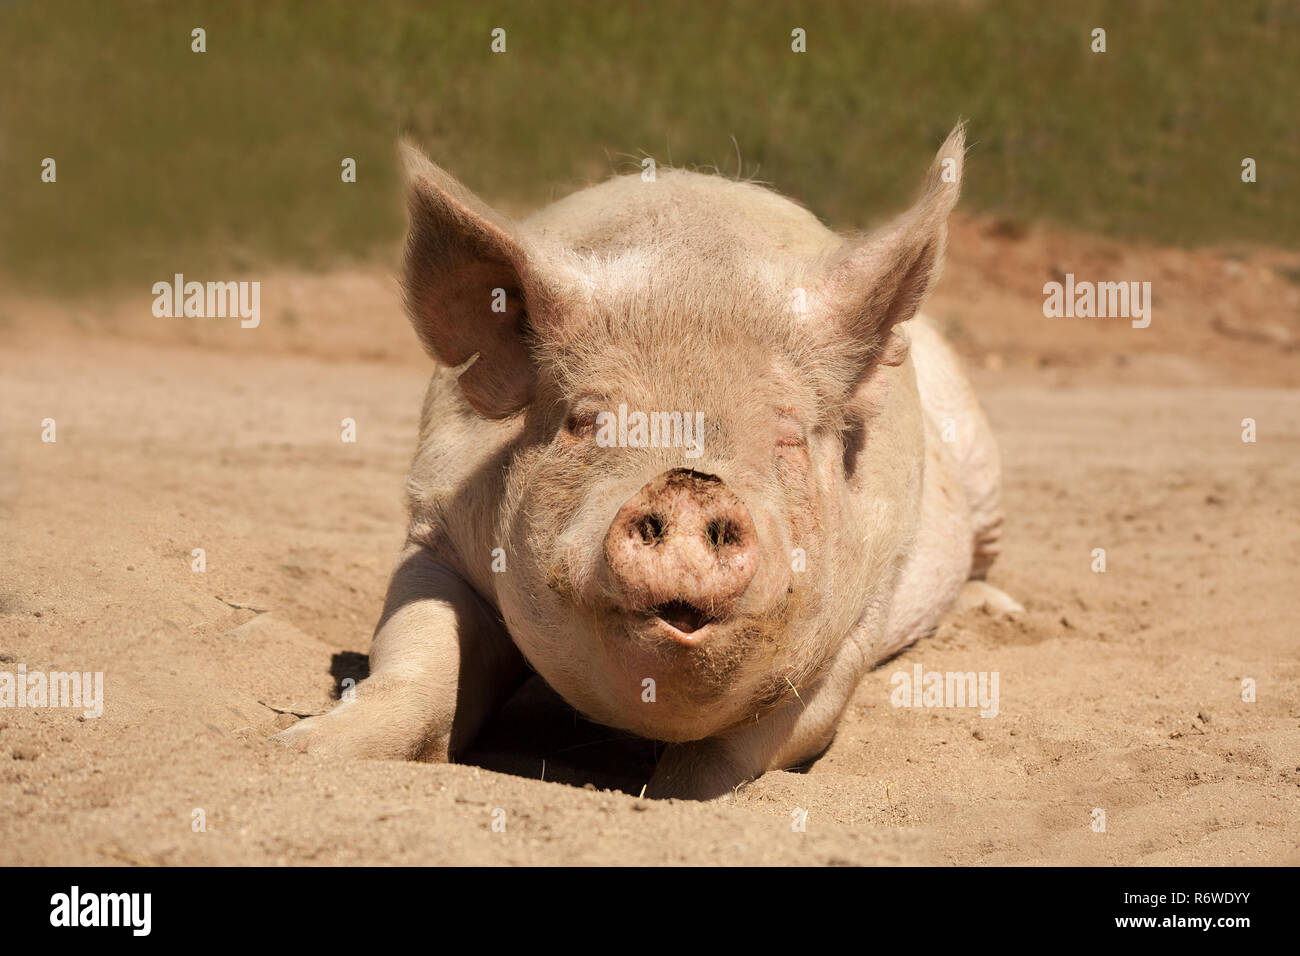 Eine große Mutter Schwein legt auf ihren Bauch nach vorn zeigen. Sie hat ihre Eys mit ihren Mund öffnen. Sie scheint zu lächeln. Sie ist in den Schmutz bedeckt. Stockfoto